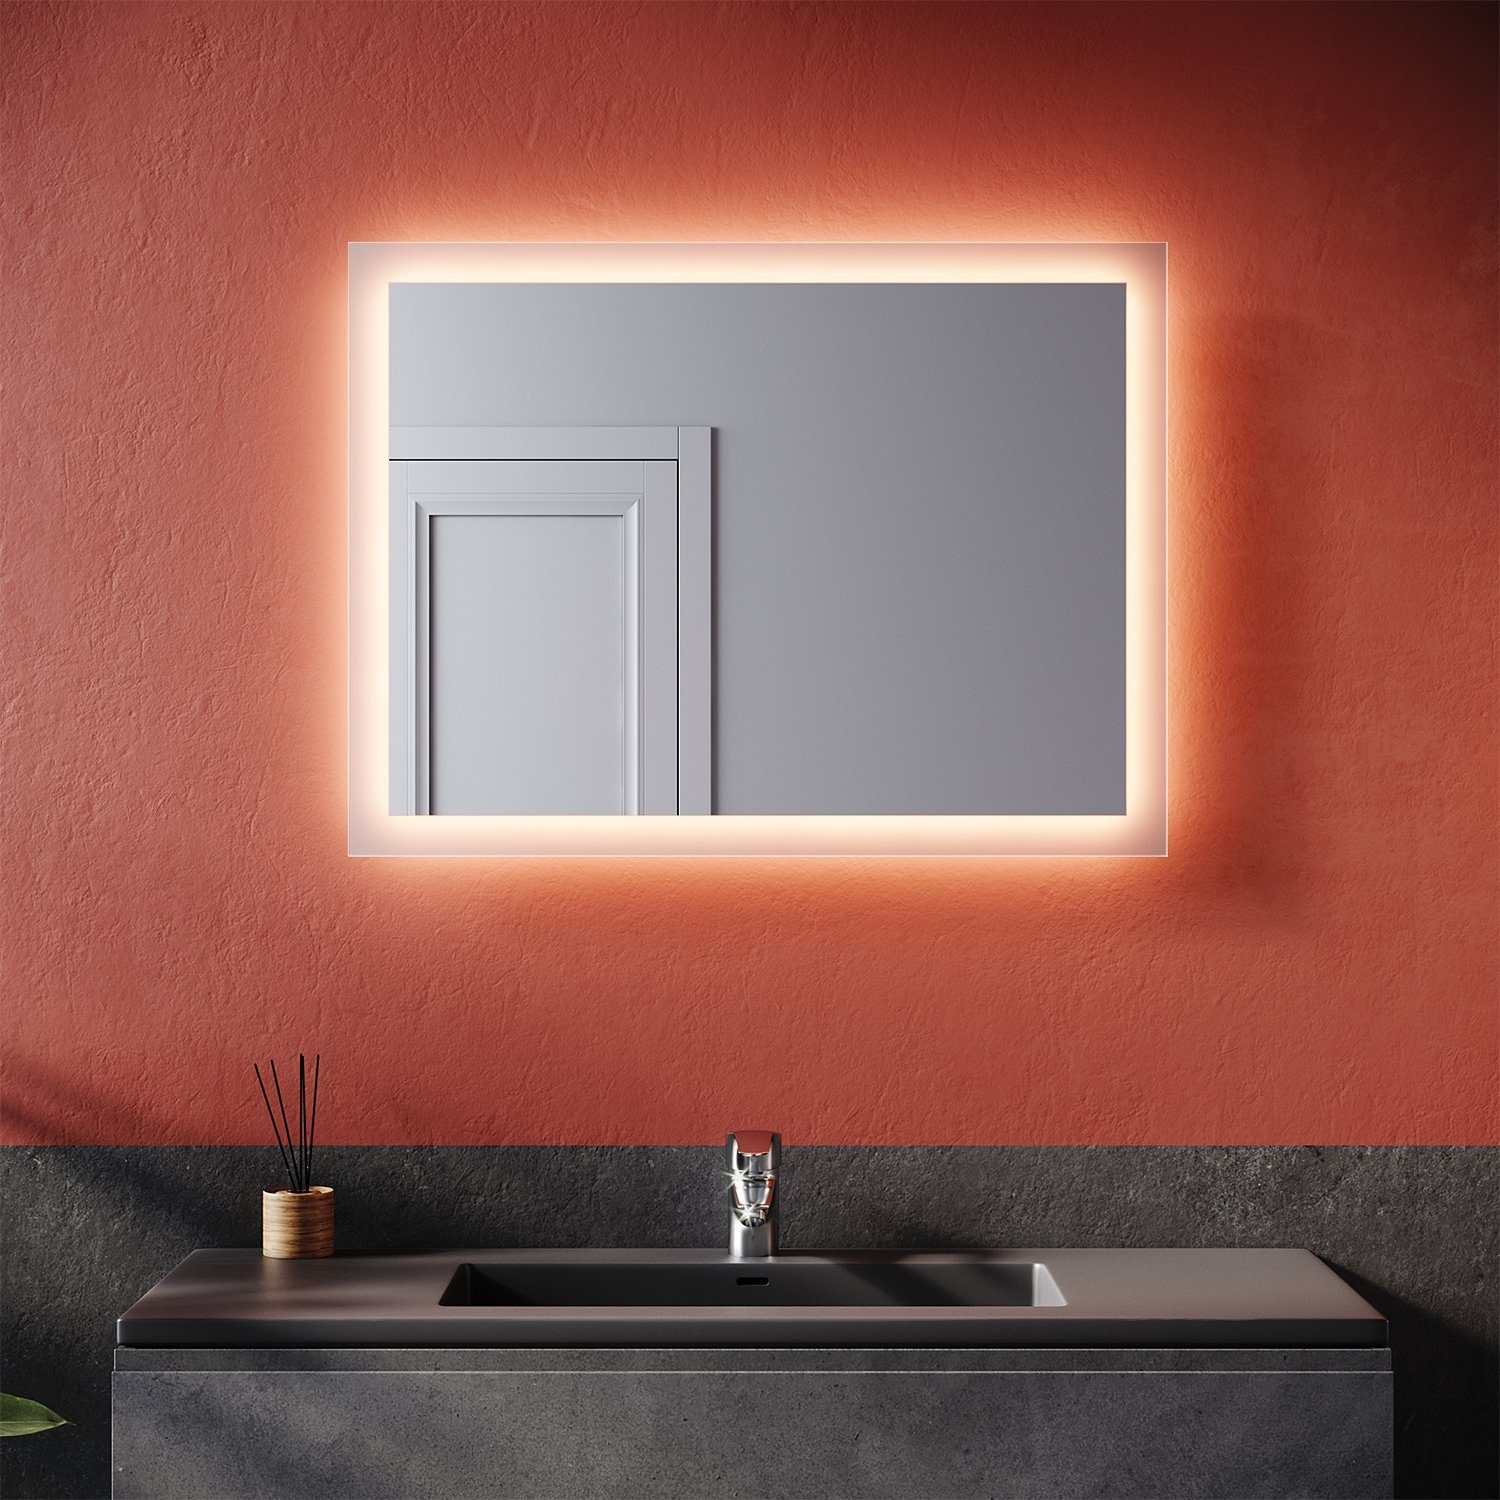 SONNI Badspiegel Badspiegel mit LED-Beleuchtung 80×60 cm, Badezimmerspiegel Wandspiegel